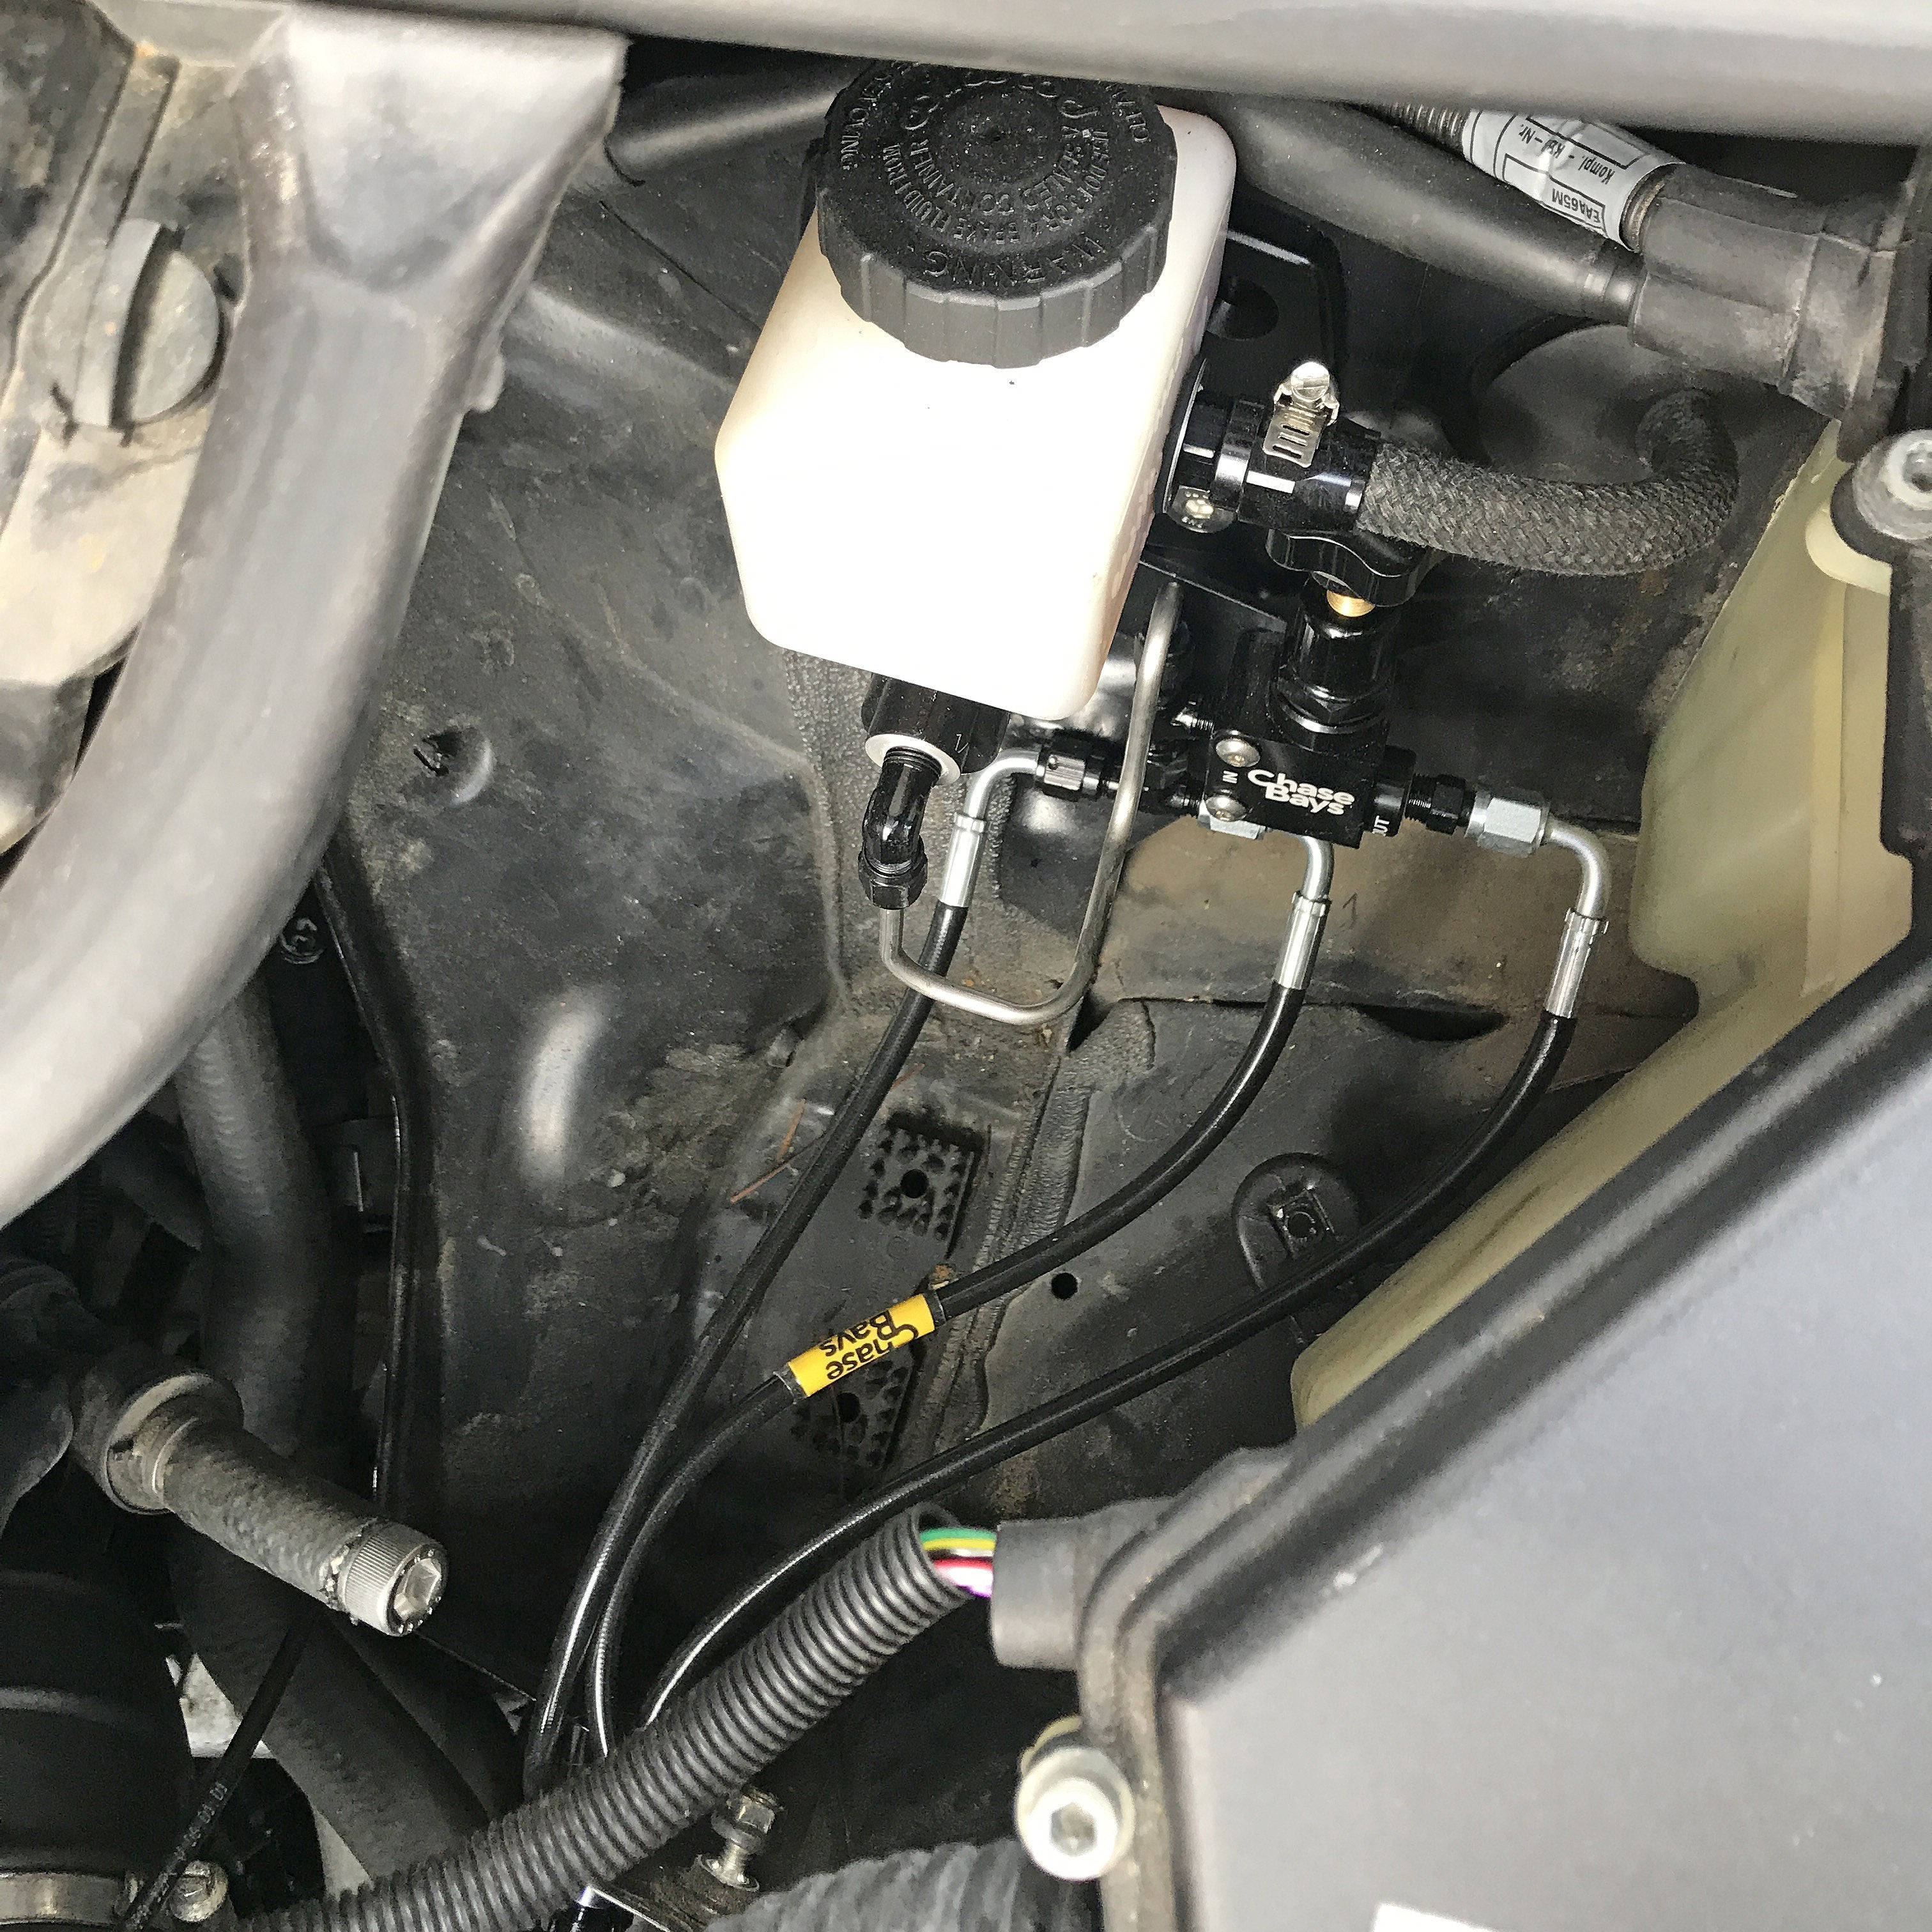 CHASE BAYS BMW E36 Bremsleitung Relocation Kit für Brake Booster Eliminator